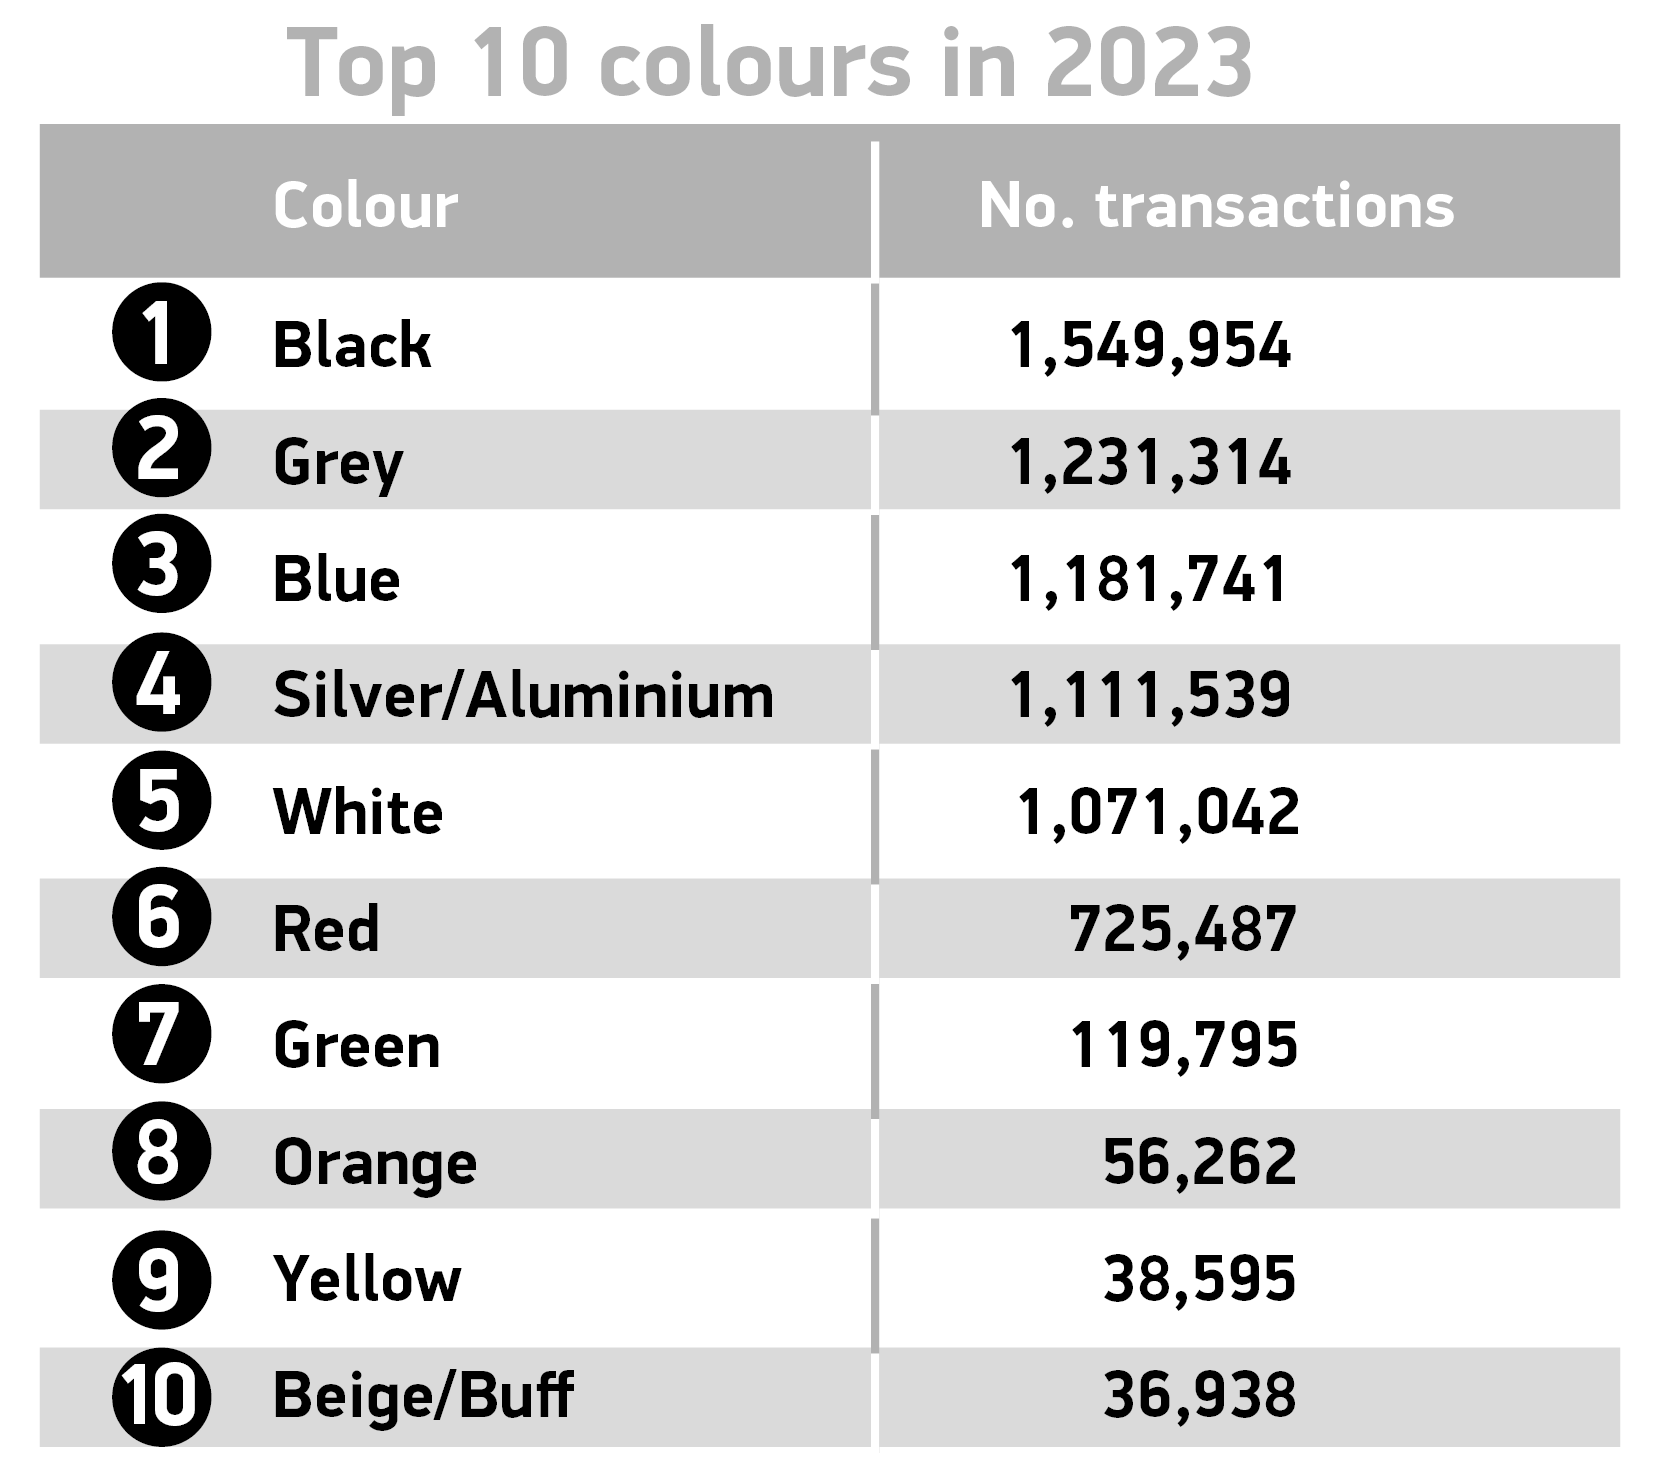 Top 10 colours FY 2023